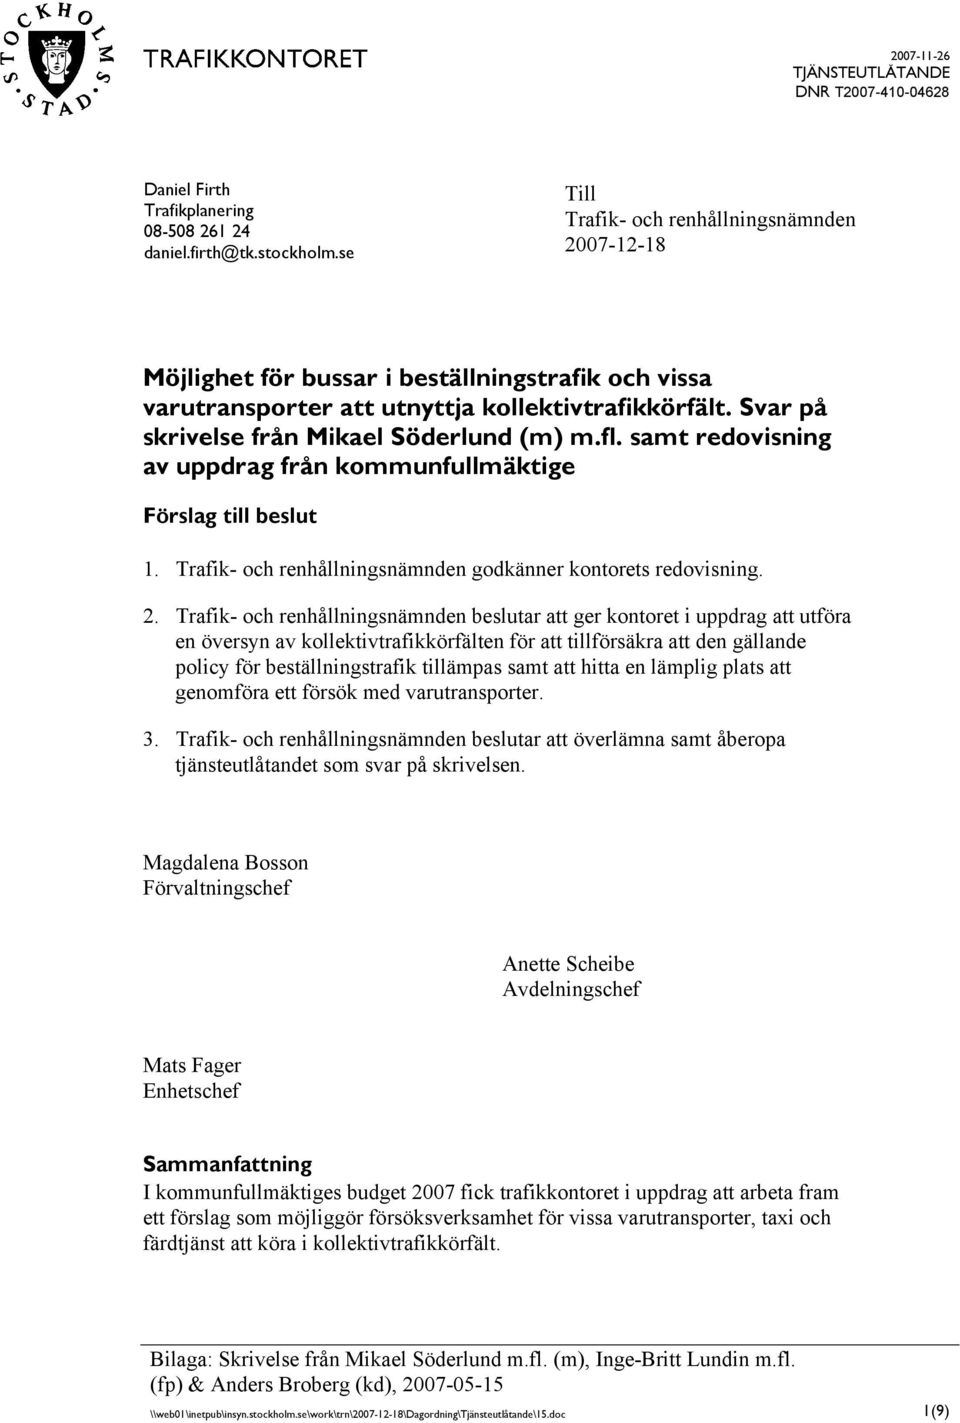 Svar på skrivelse från Mikael Söderlund (m) m.fl. samt redovisning av uppdrag från kommunfullmäktige Förslag till beslut 1. Trafik- och renhållningsnämnden godkänner kontorets redovisning. 2.